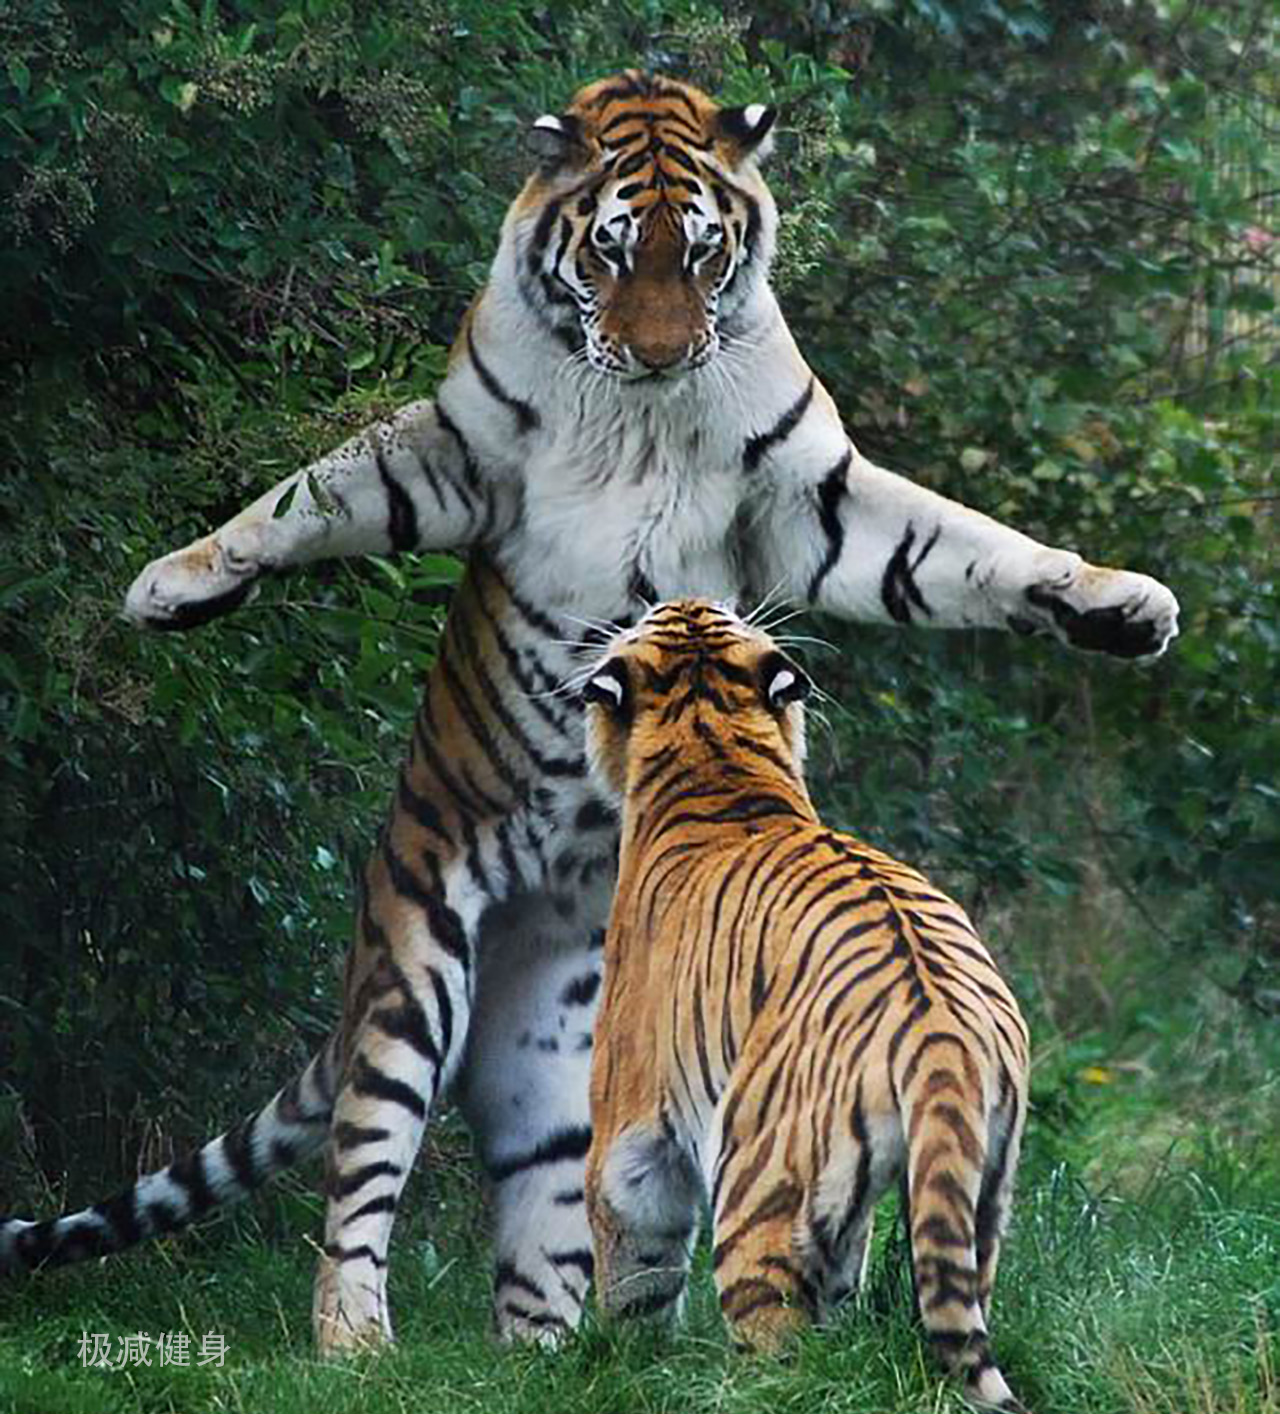 如果老虎和人都盡全力打出一掌，兩者力量會有多大差距？